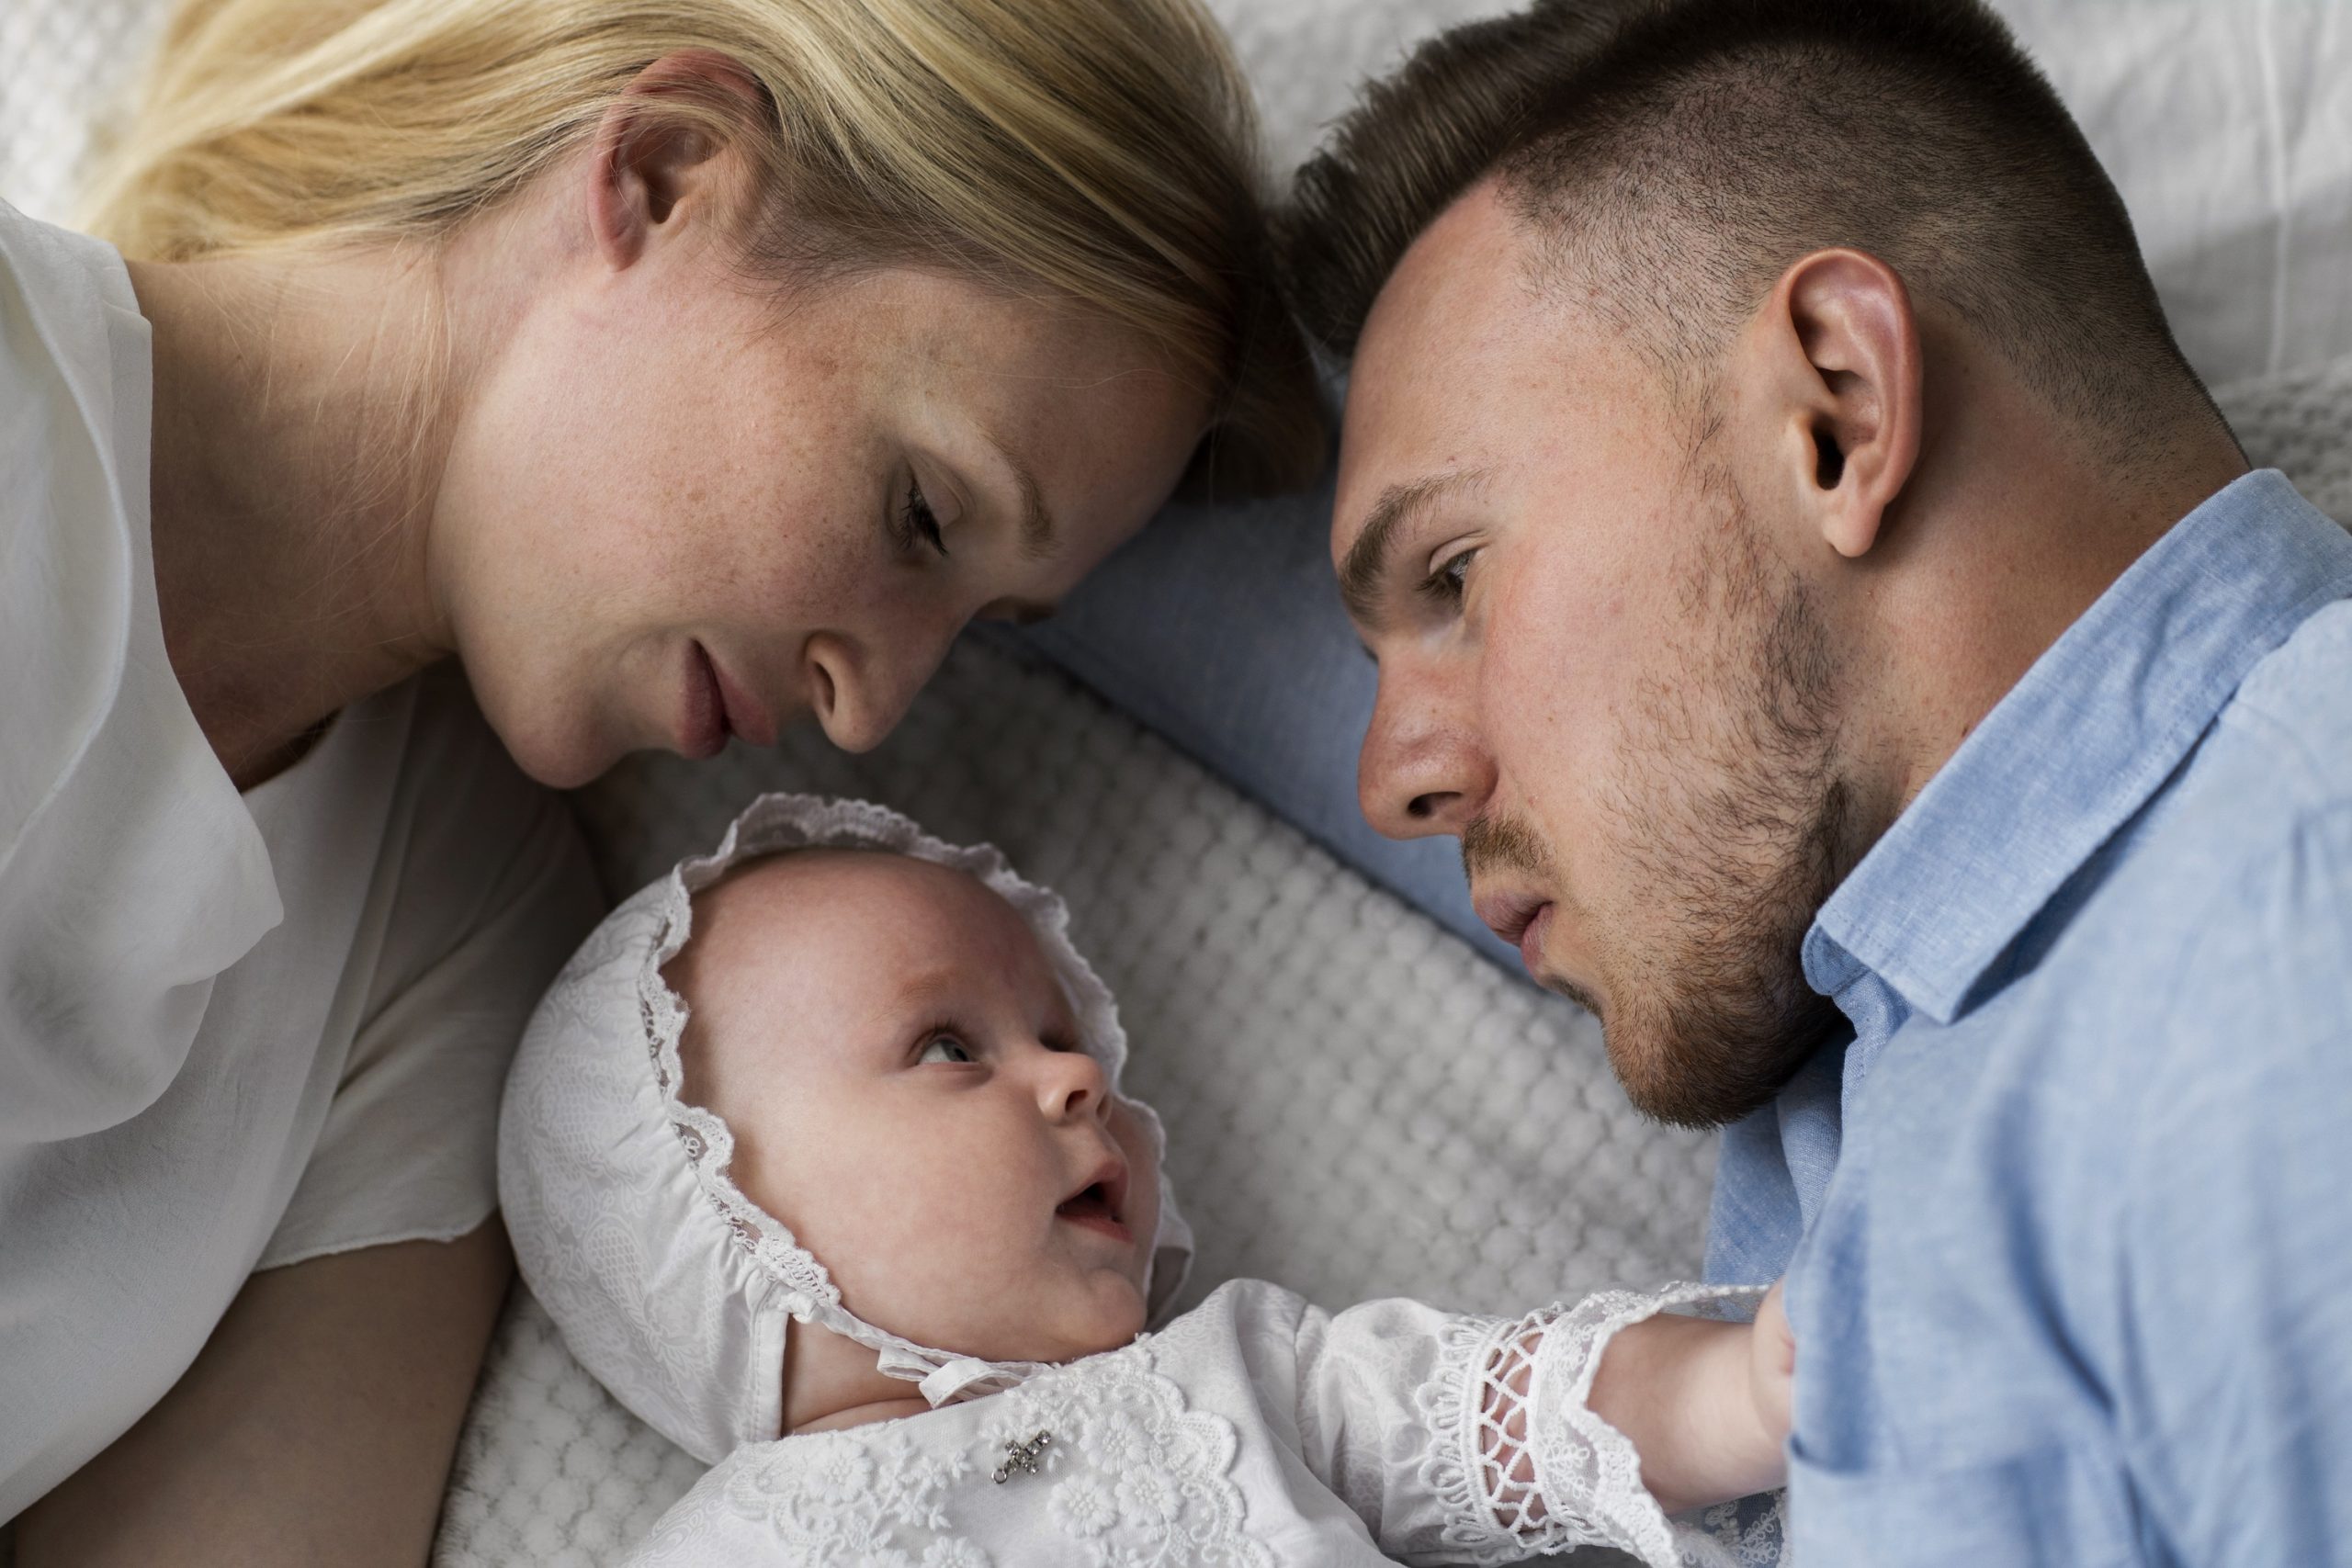 Profilbild: Erstausstattung Babys, eine Mutter und ein Vatter mit einem Baby in der Mitte